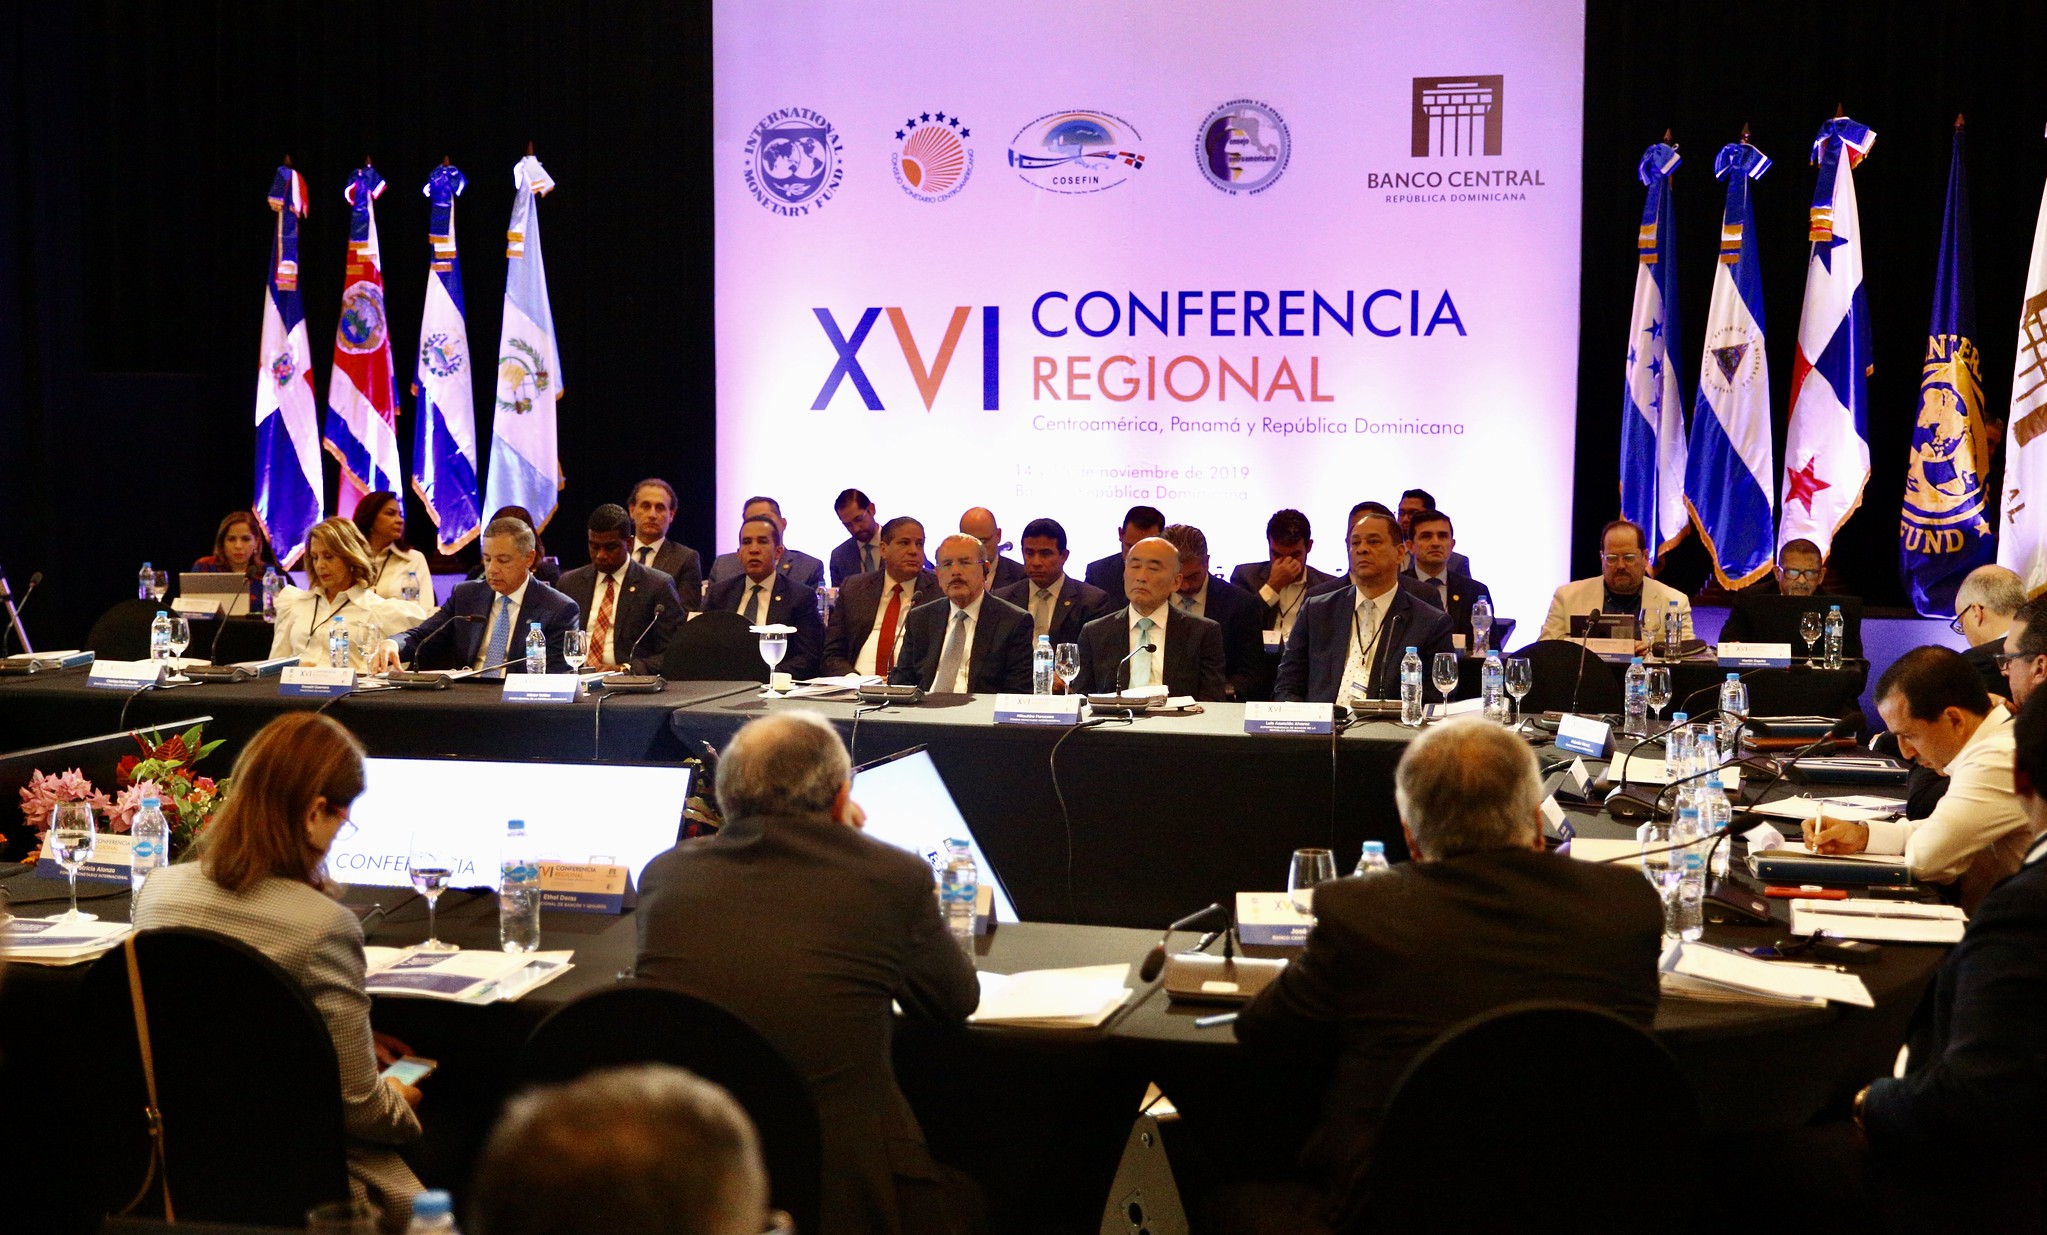 REPÚBLICA DOMINICANA: Danilo Medina participa en apertura XVI Conferencia Regional: Centroamérica, Panamá y República Dominicana del FMI y Banco Central